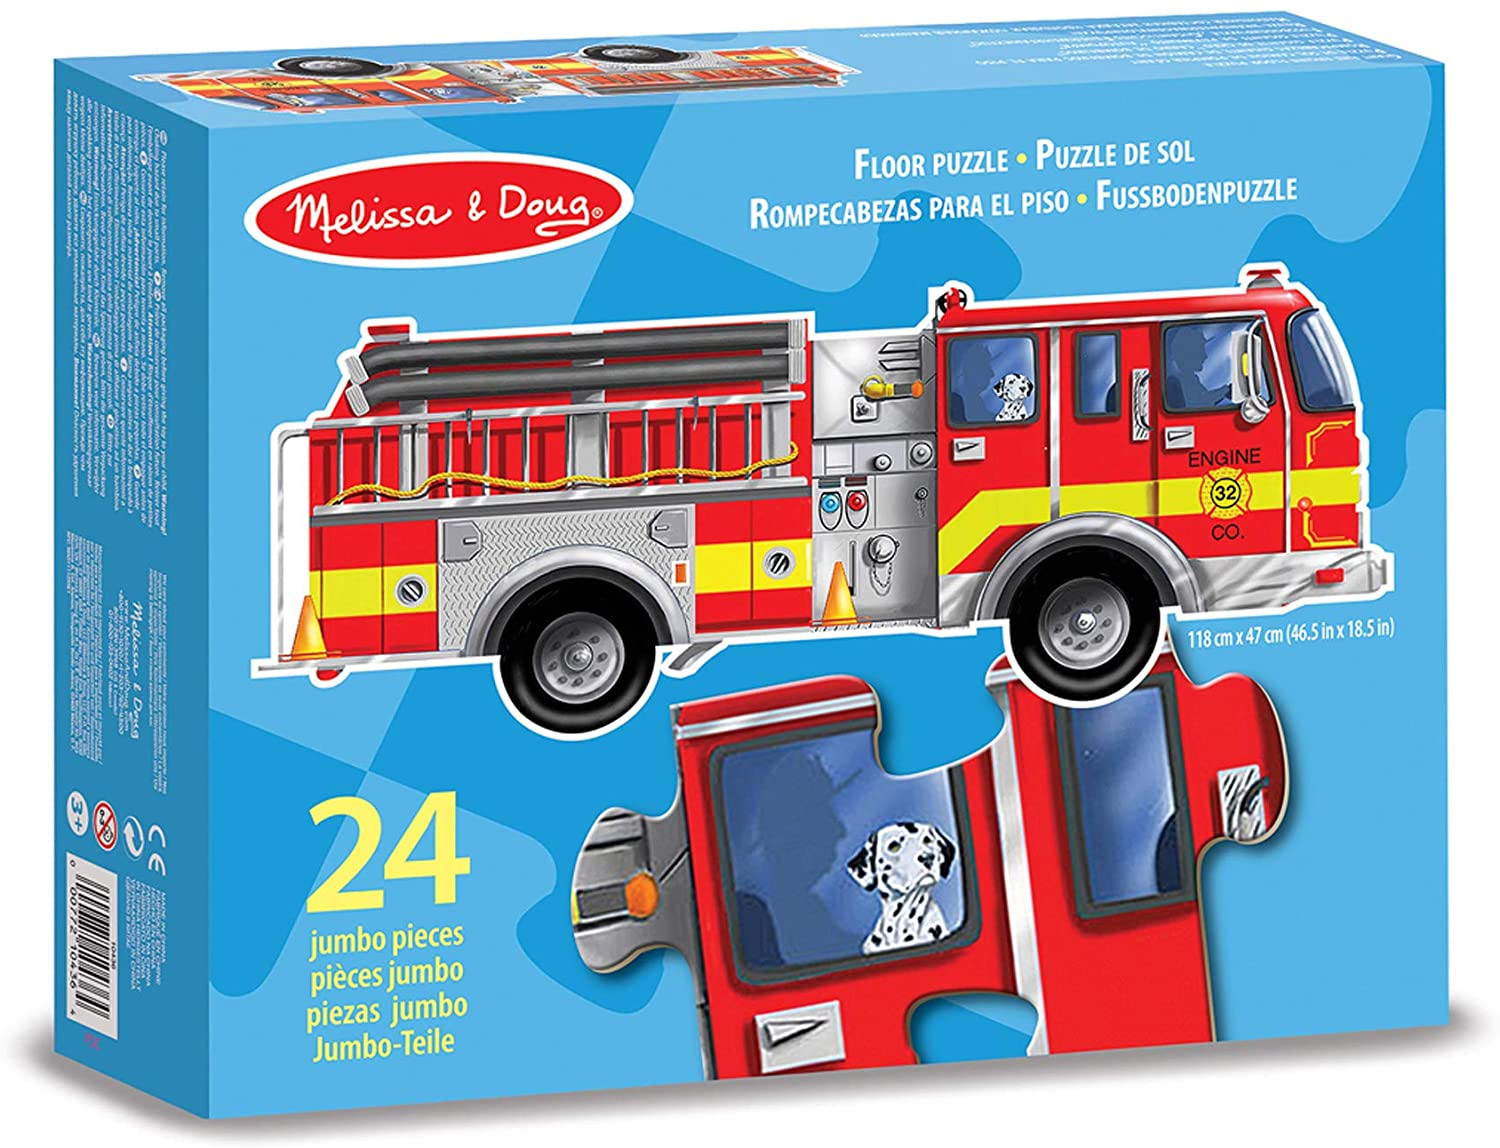 Melissa and Doug Floor Puzzle Assortment-Camion de Pompier